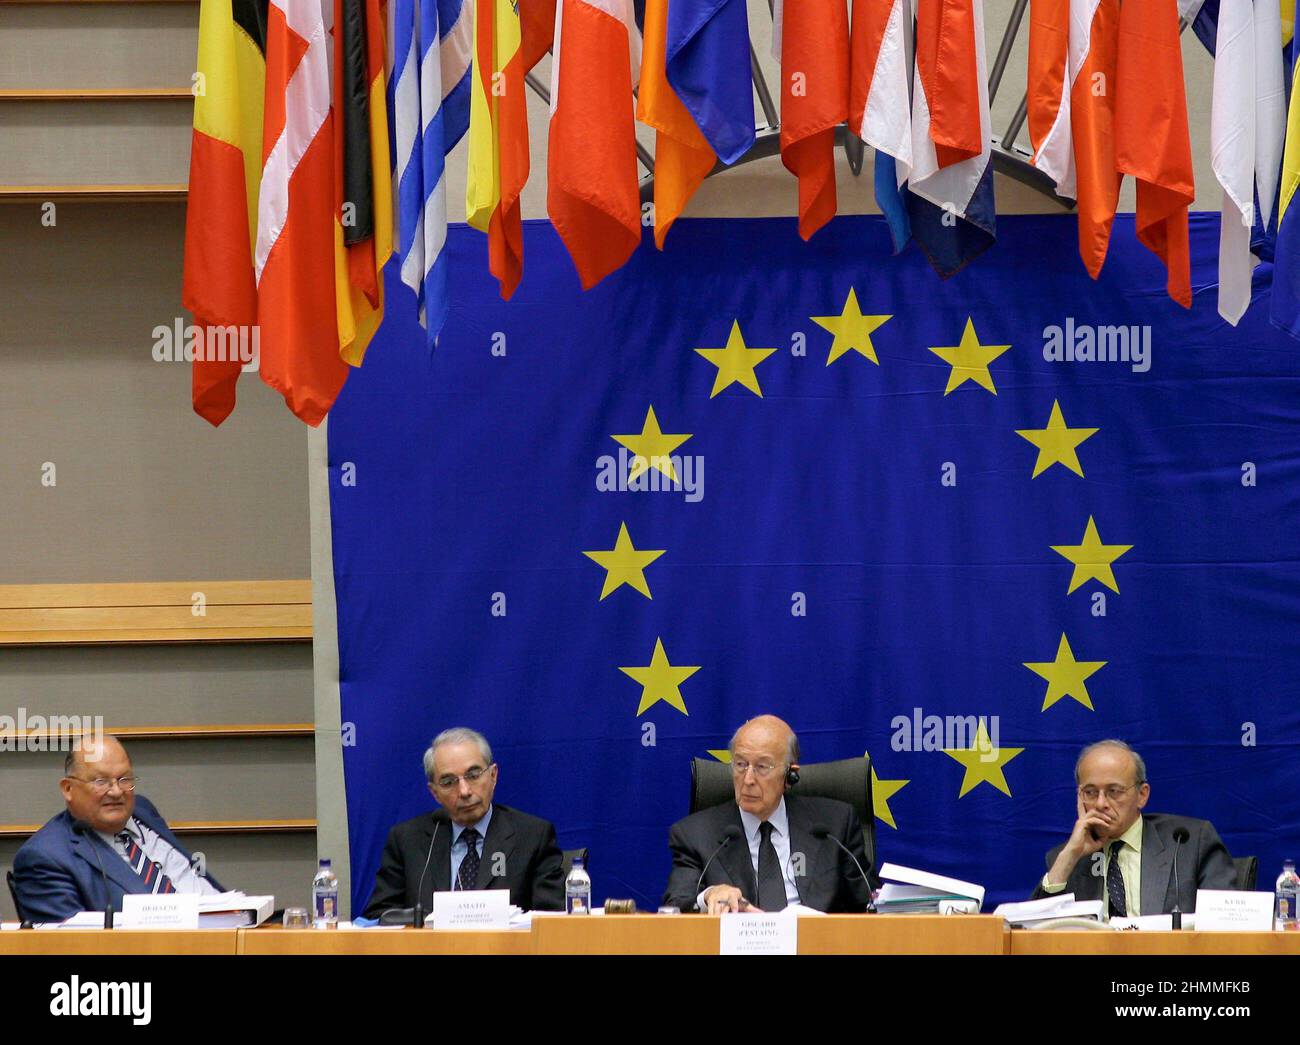 Belgique, Bruxelles, le 5 juin 2003: Valry Giscard d'Estaing, Président de la Convention européenne, assiste à une conférence sur l'avenir de l'Europe où un traité établissant une Constitution pour l'Europe doit être adopté. Valry Giscard d'Estaing, Président de la Convention européenne, avec Jean-Luc Dehaene, Guiliano Amato et Sir John Kerr Banque D'Images